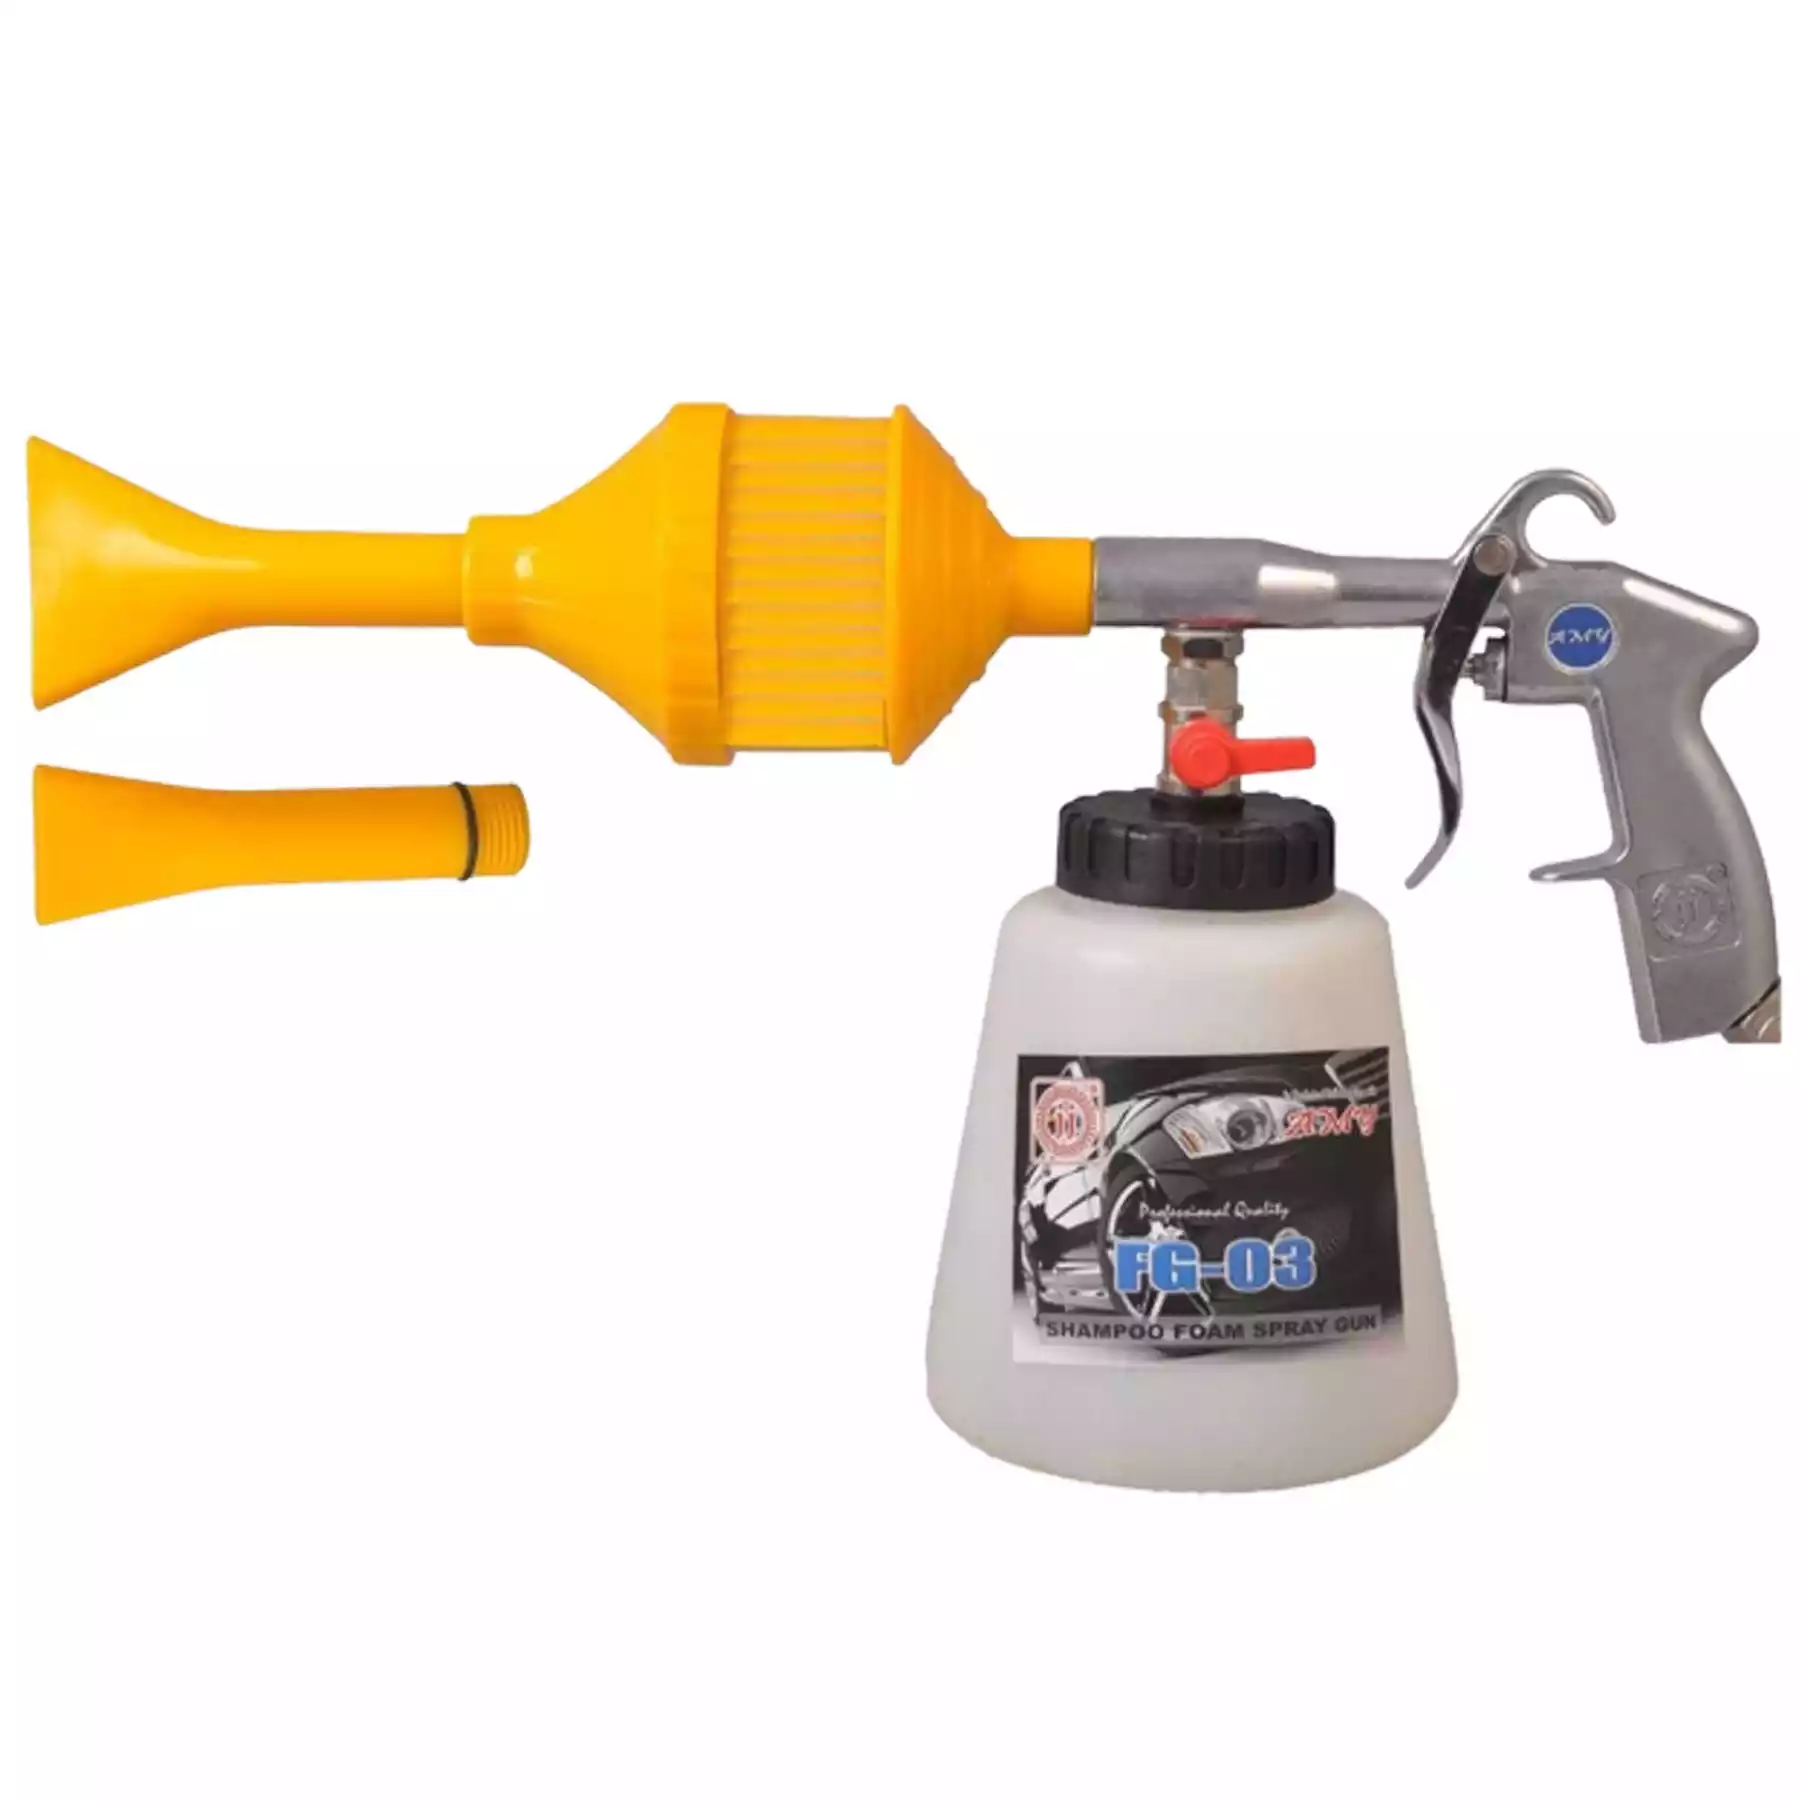 Plastic Air Shampoo Foam Spray Gun (FG-03)